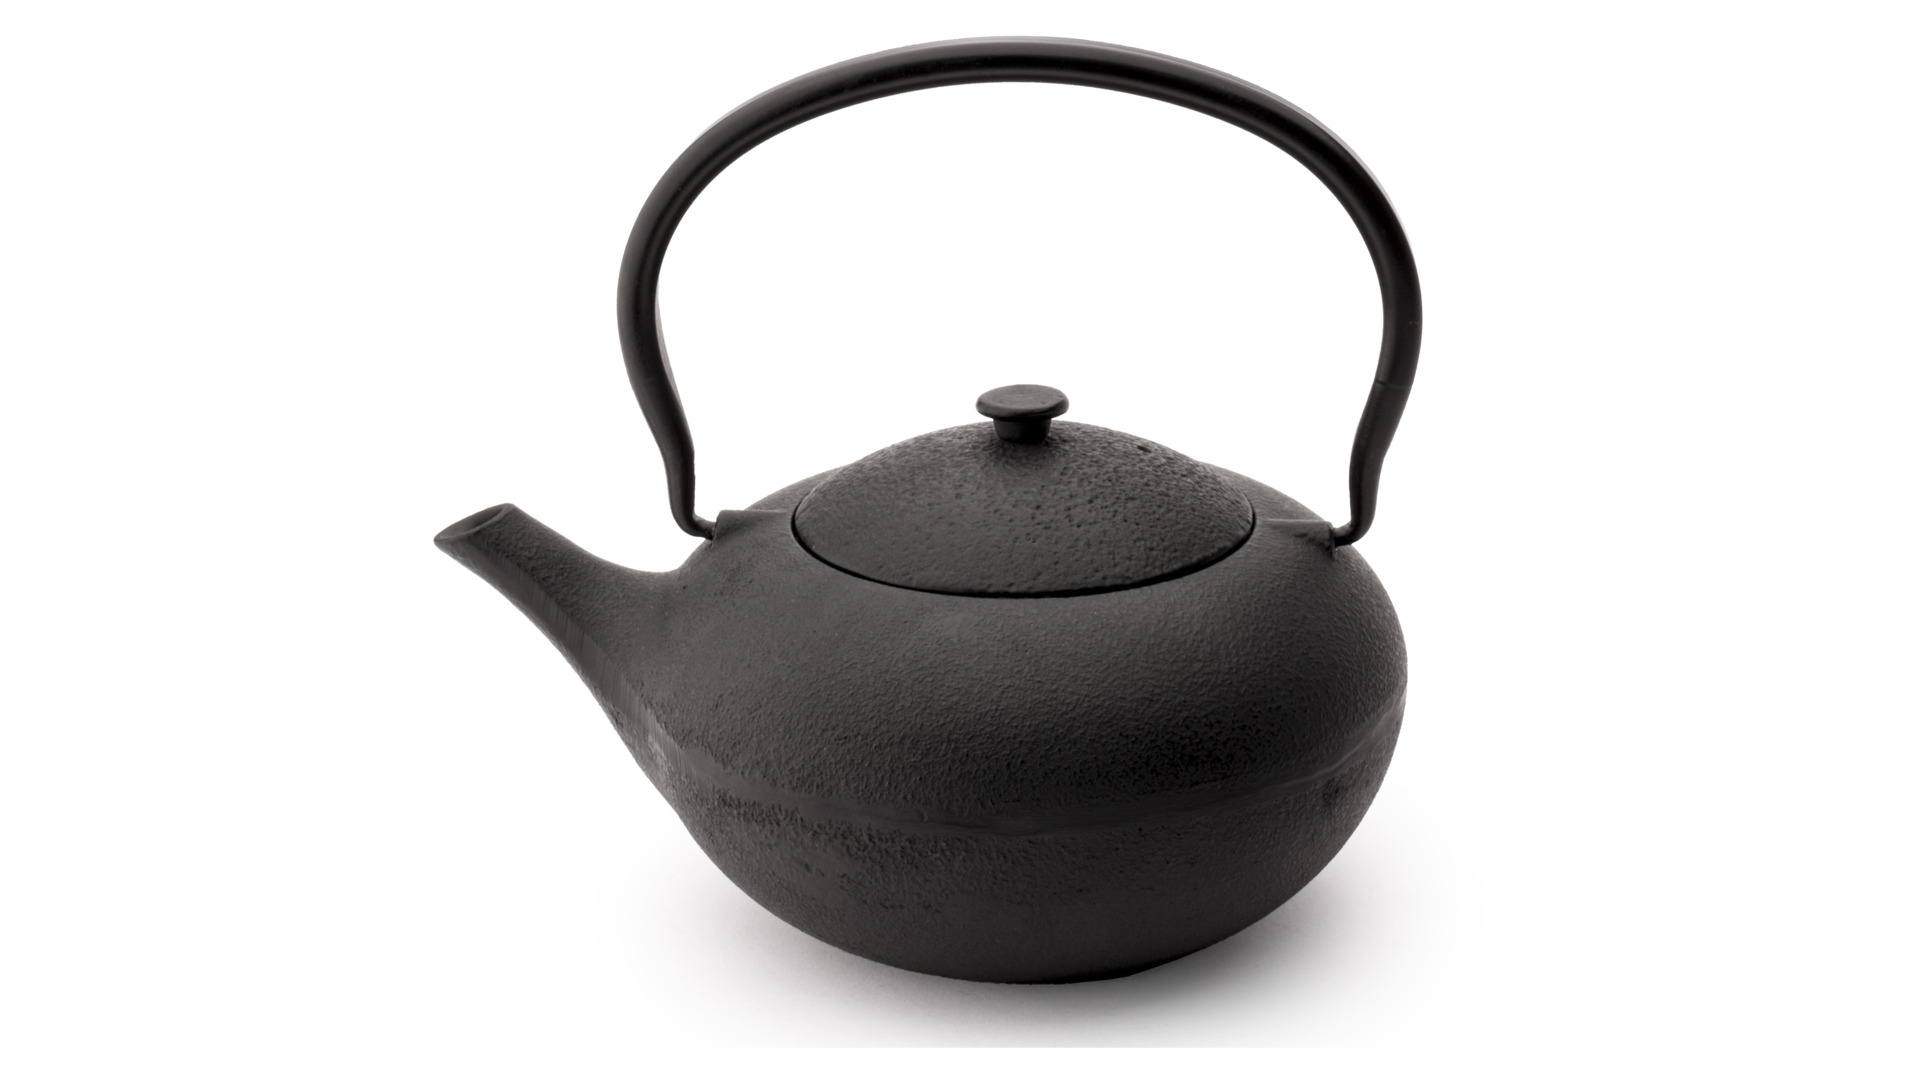 Набор для чая Bredemeijer Shanxi чайник заварочный  1 л, с фильтром, чугун, черный и 2 пиалы, фарфор